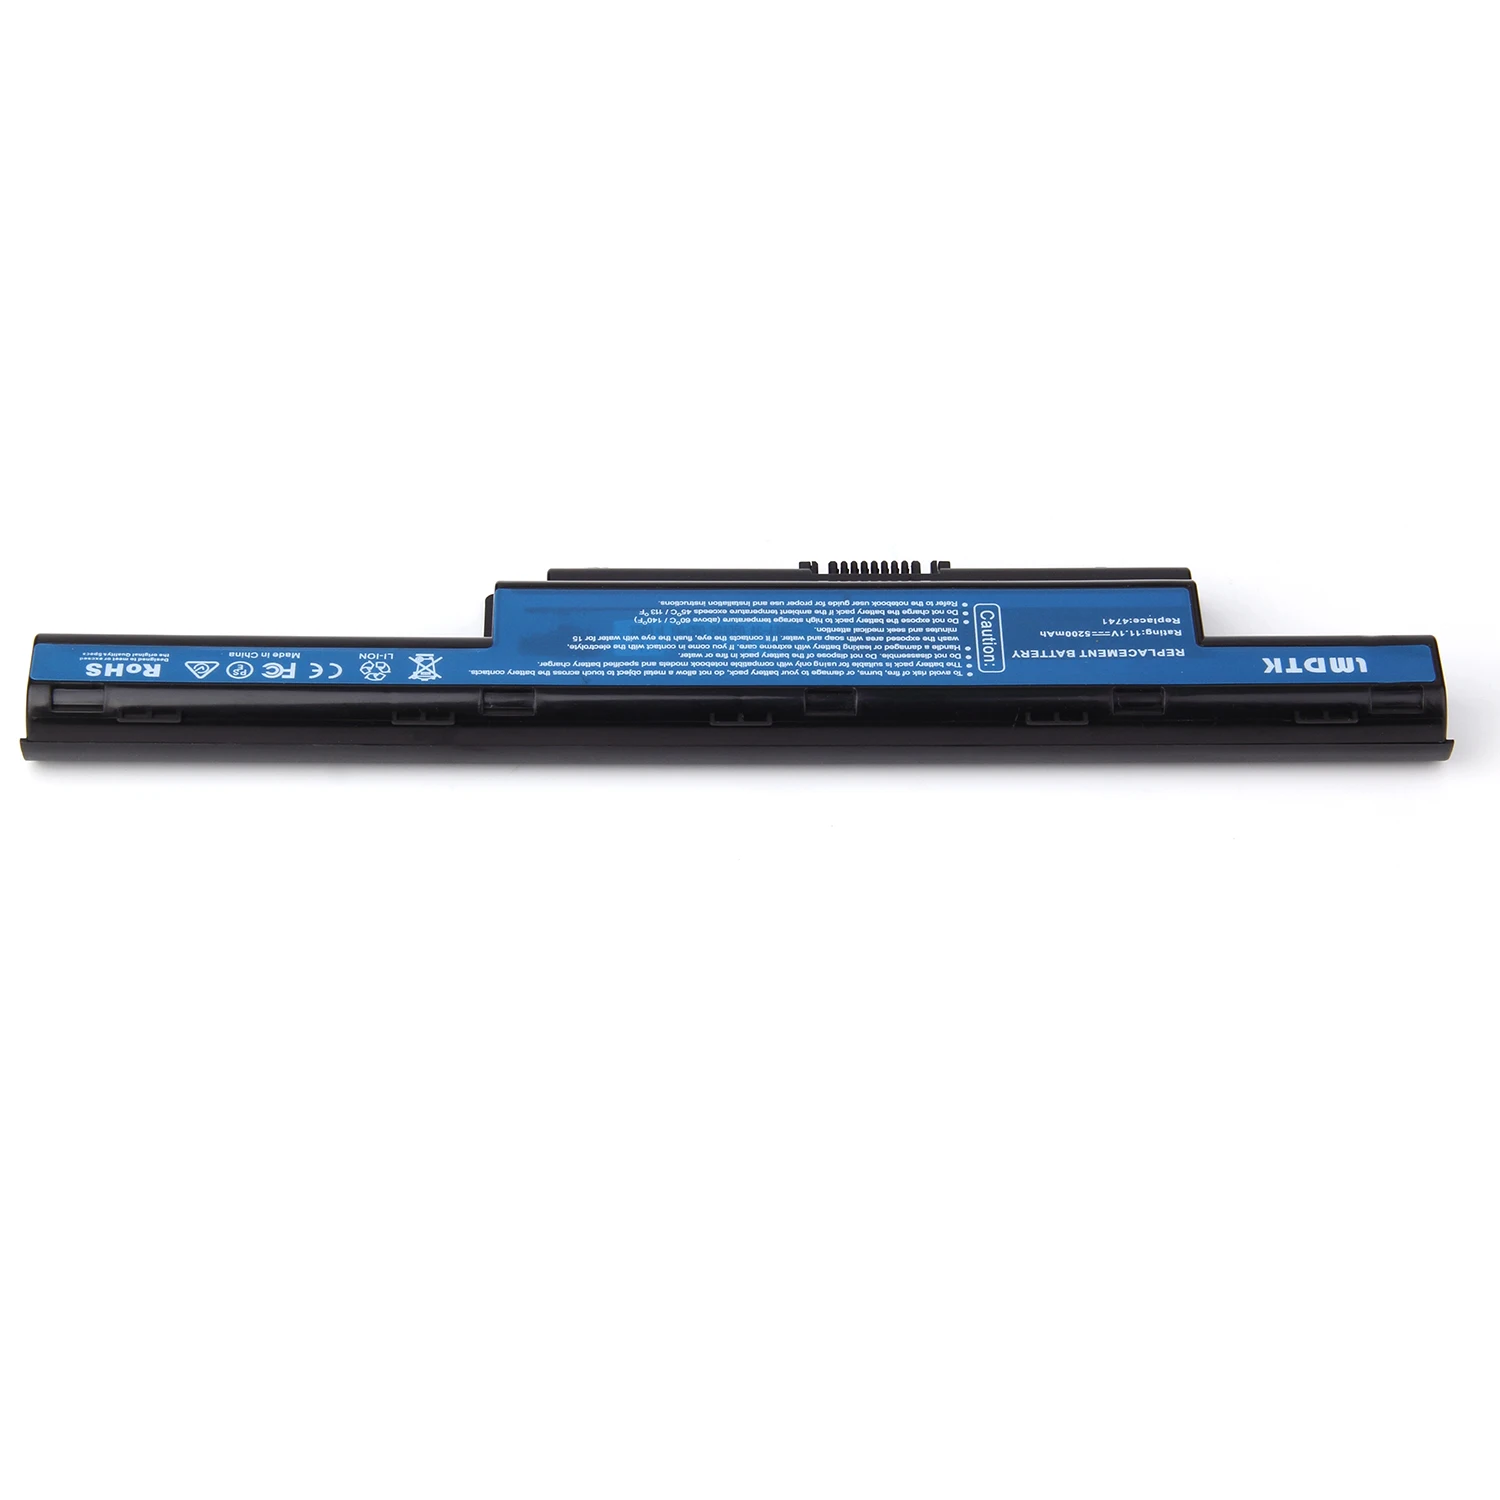 Новый аккумулятор LMDTK для ноутбуков Acer батарея с 6 ячейками 4741G AS10D31 AS10D3E AS10D41 AS10D51 - Фото №1